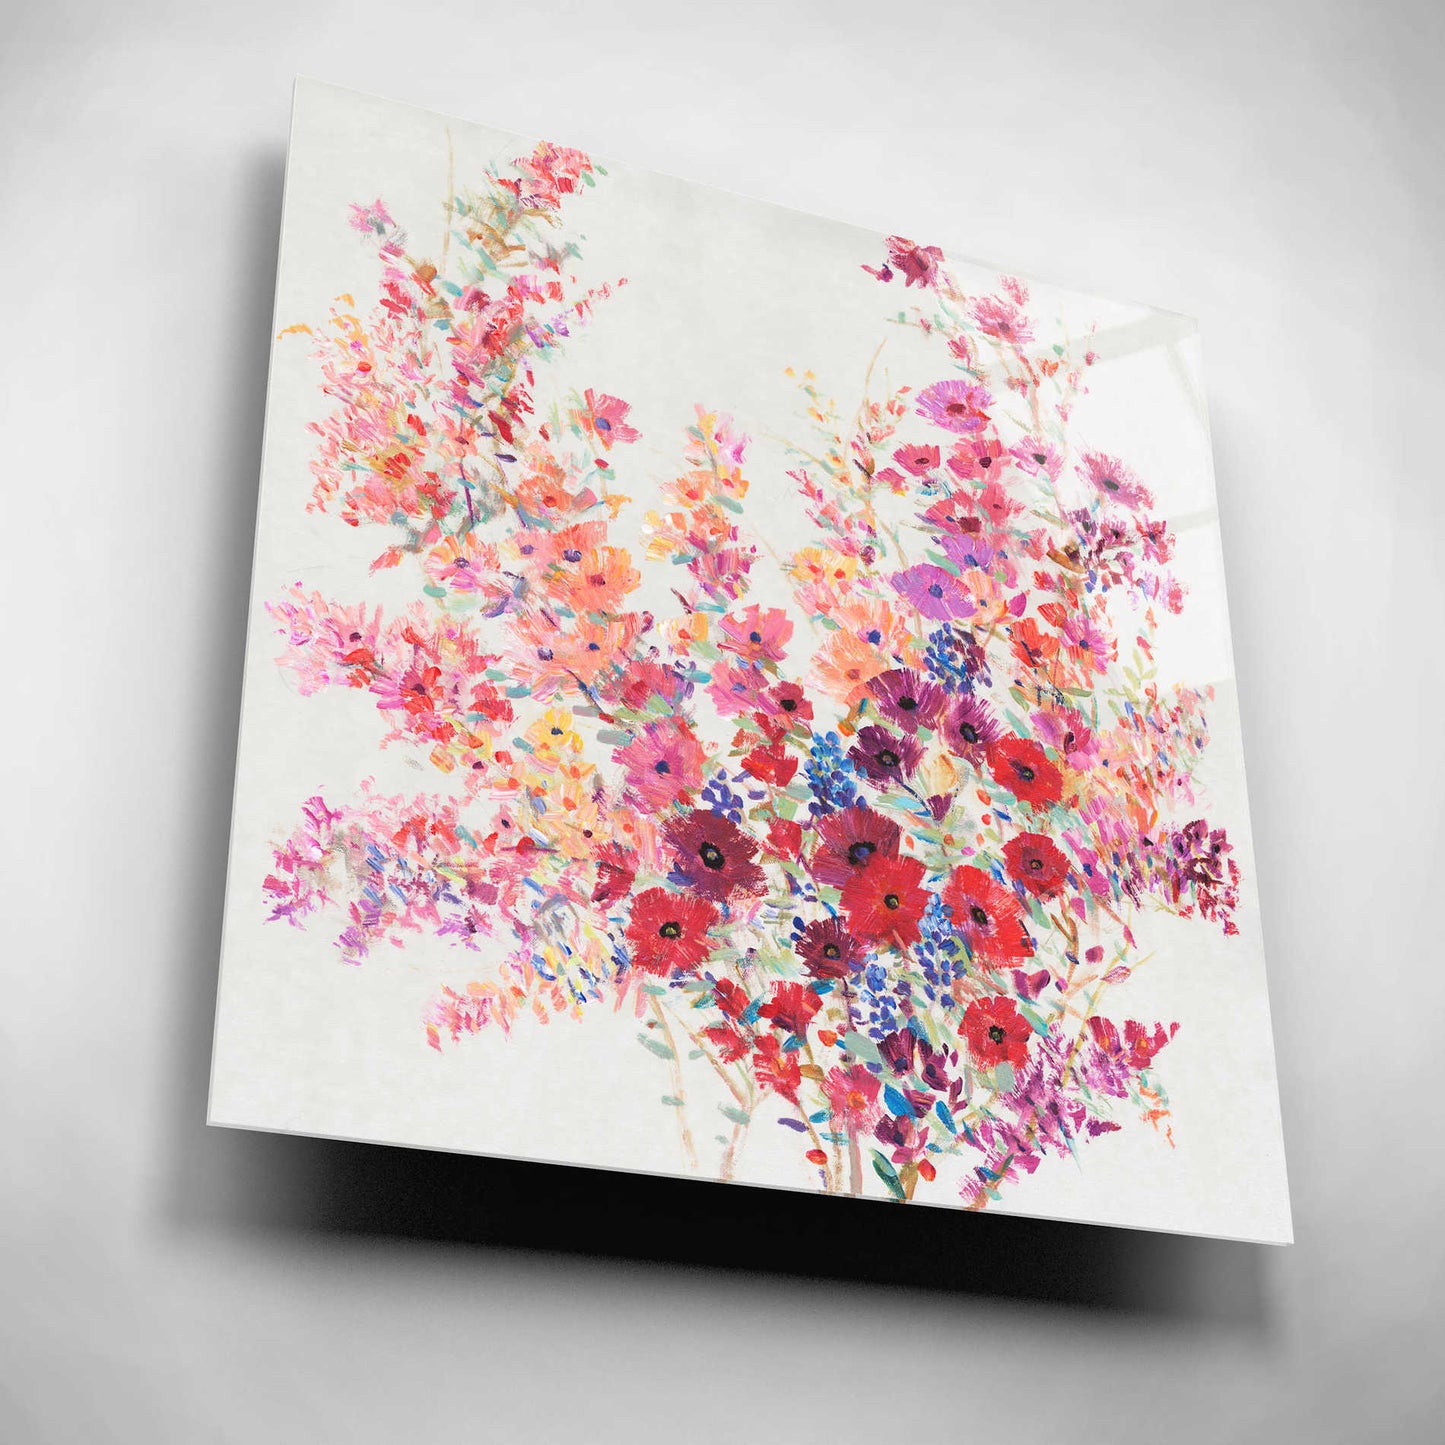 Epic Art 'Flowers on a Vine II' by Tim O'Toole, Acrylic Glass Wall Art,12x12